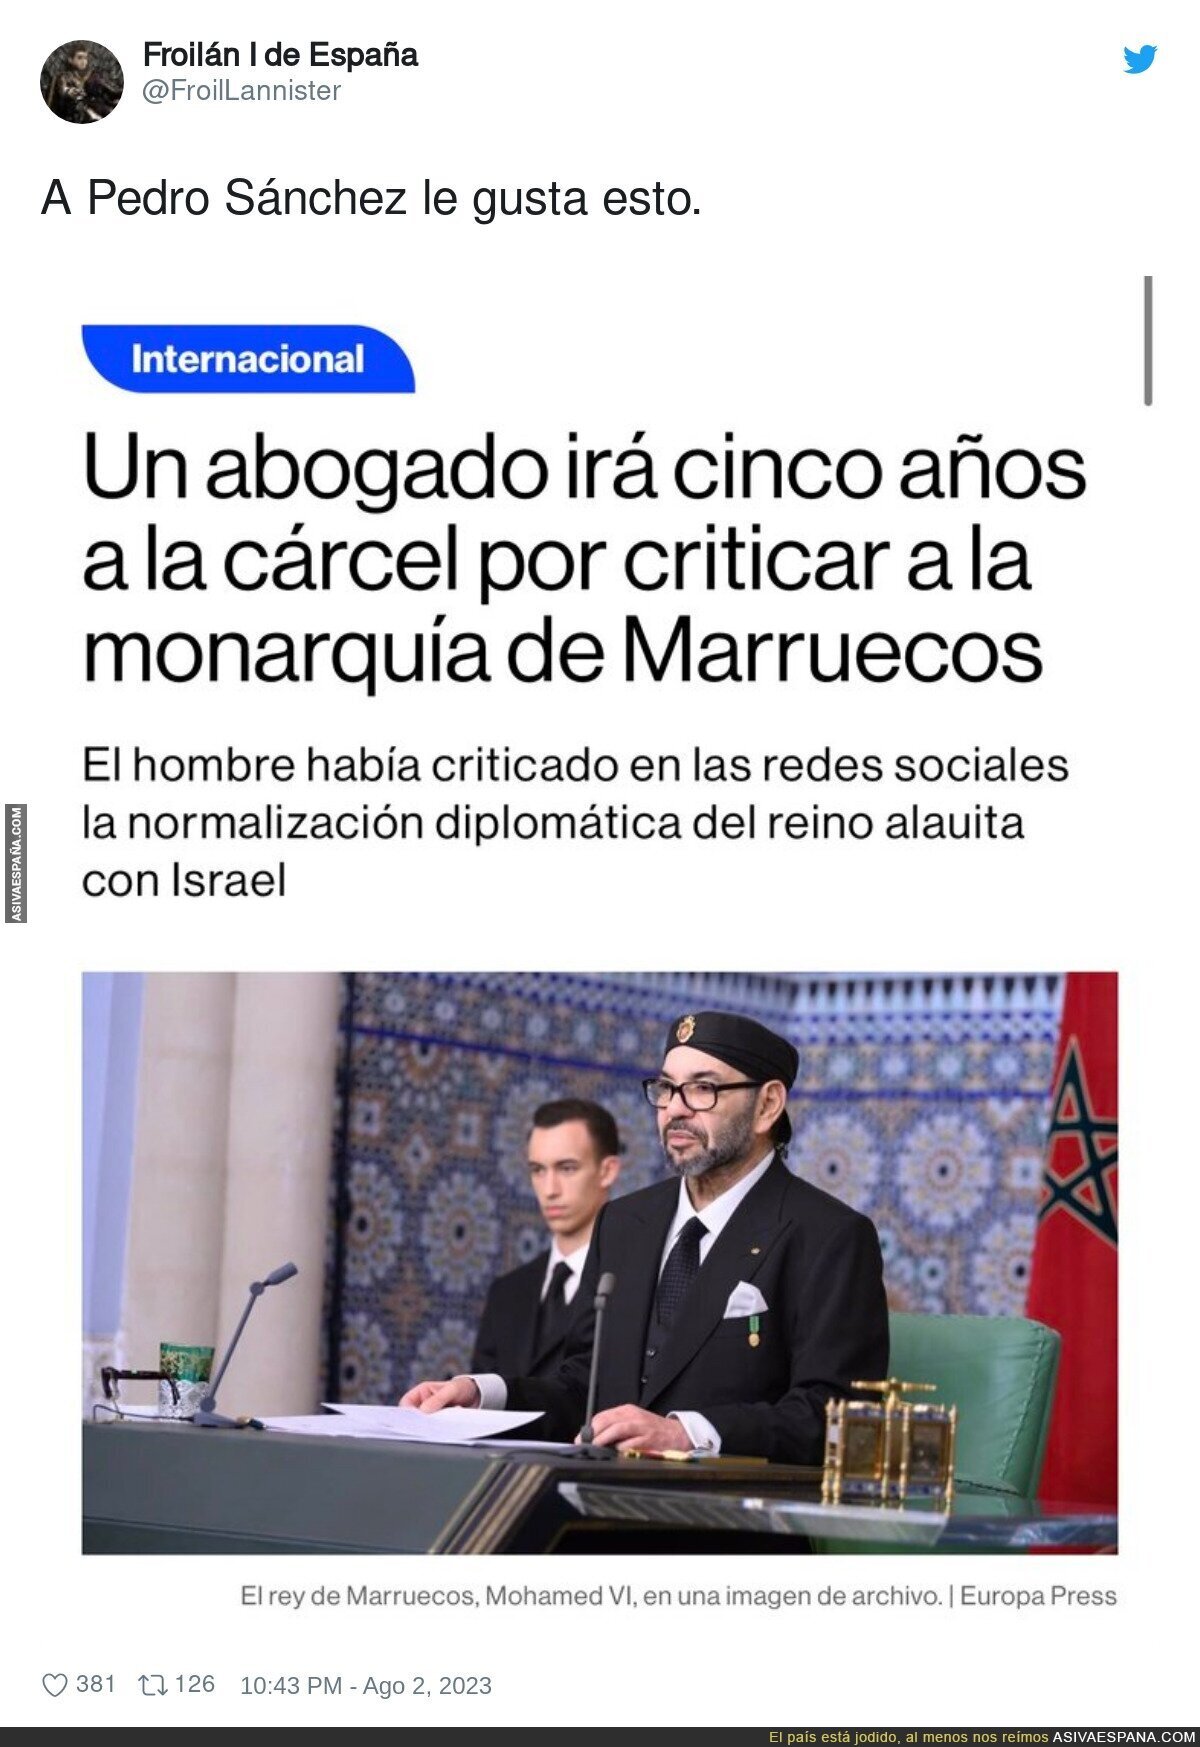 Hay un gran problema en Marruecos